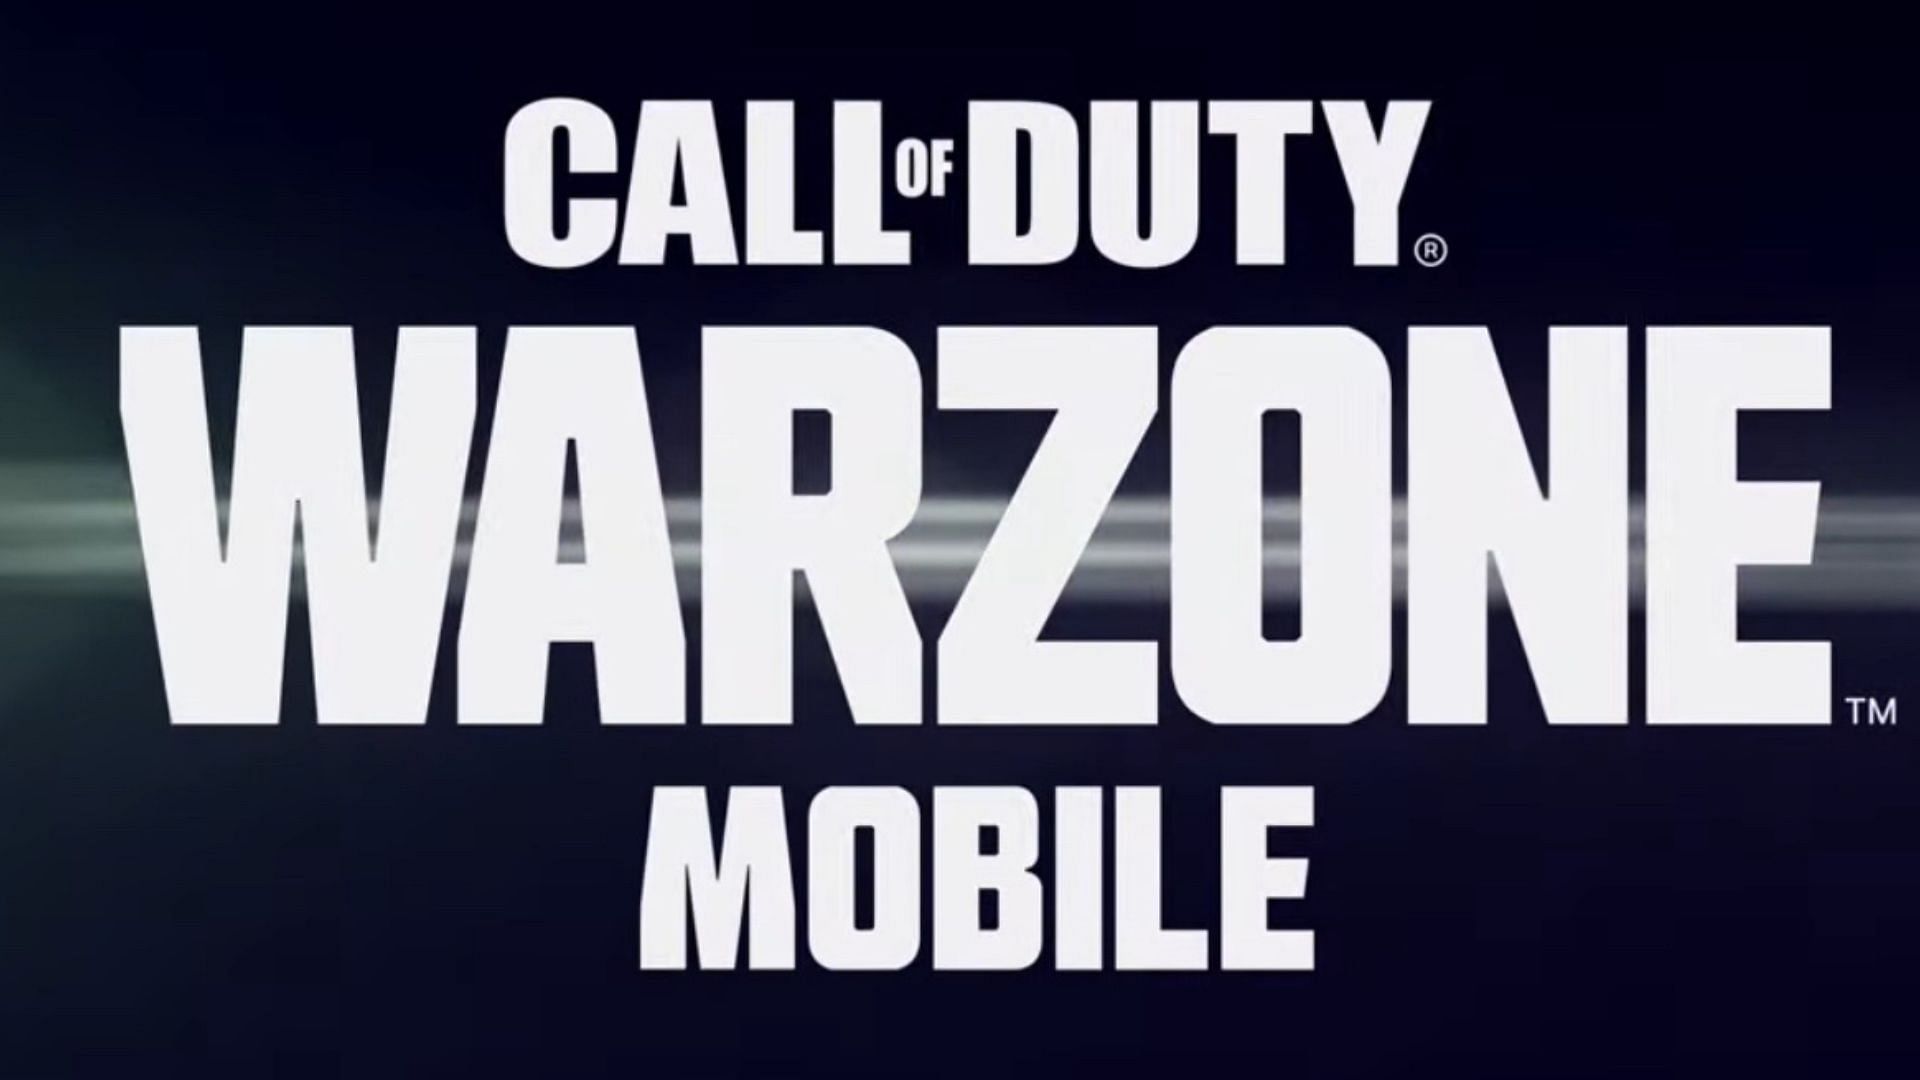 warzone mobile download usa｜TikTok Search